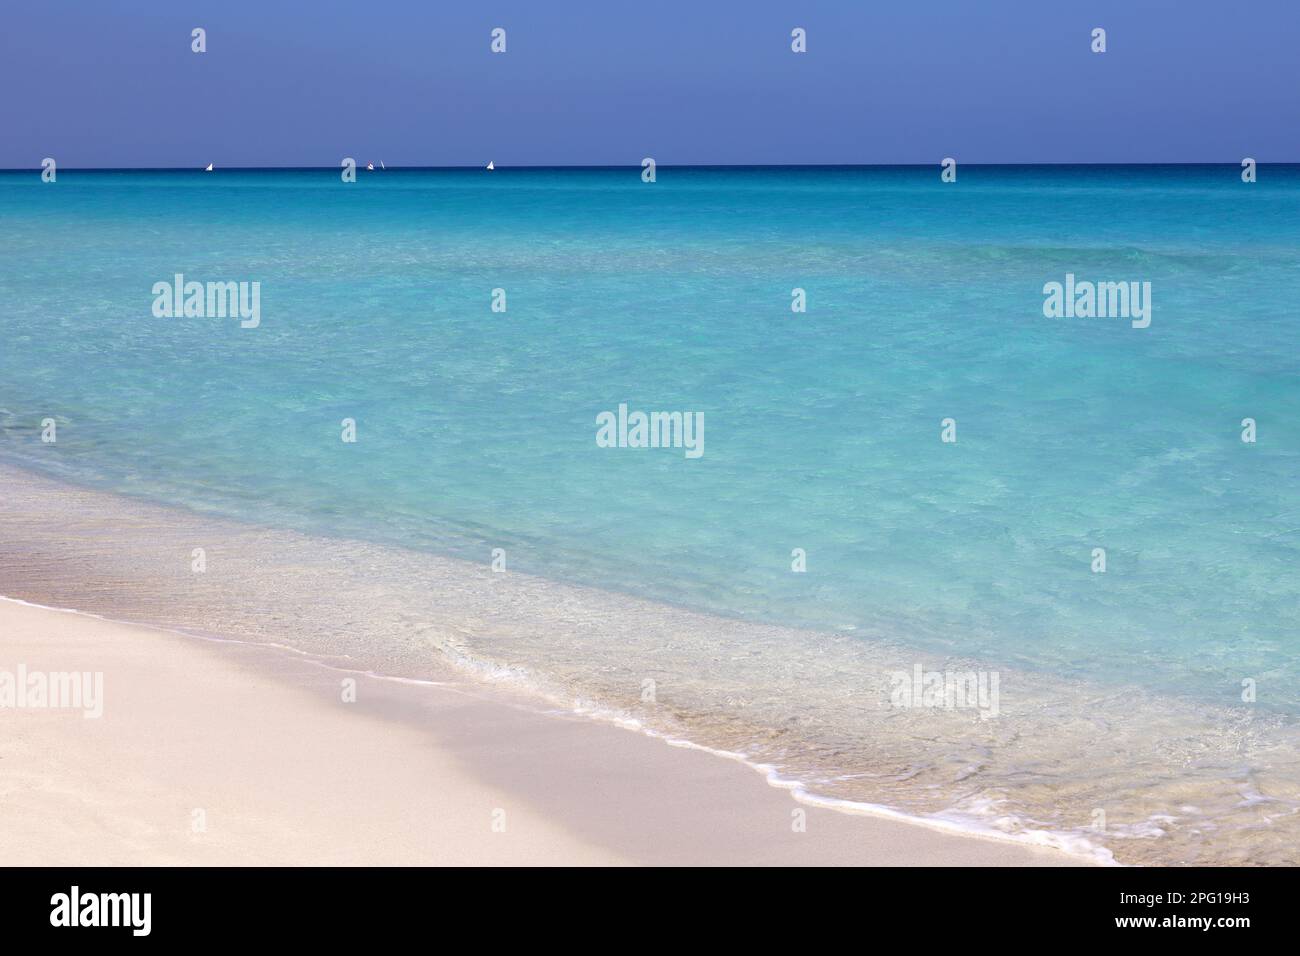 Plage tropicale avec sable blanc sur un océan, vue sur les vagues bleues et le ciel. Côte des Caraïbes, arrière-plan pour des vacances sur une nature paradisiaque Banque D'Images